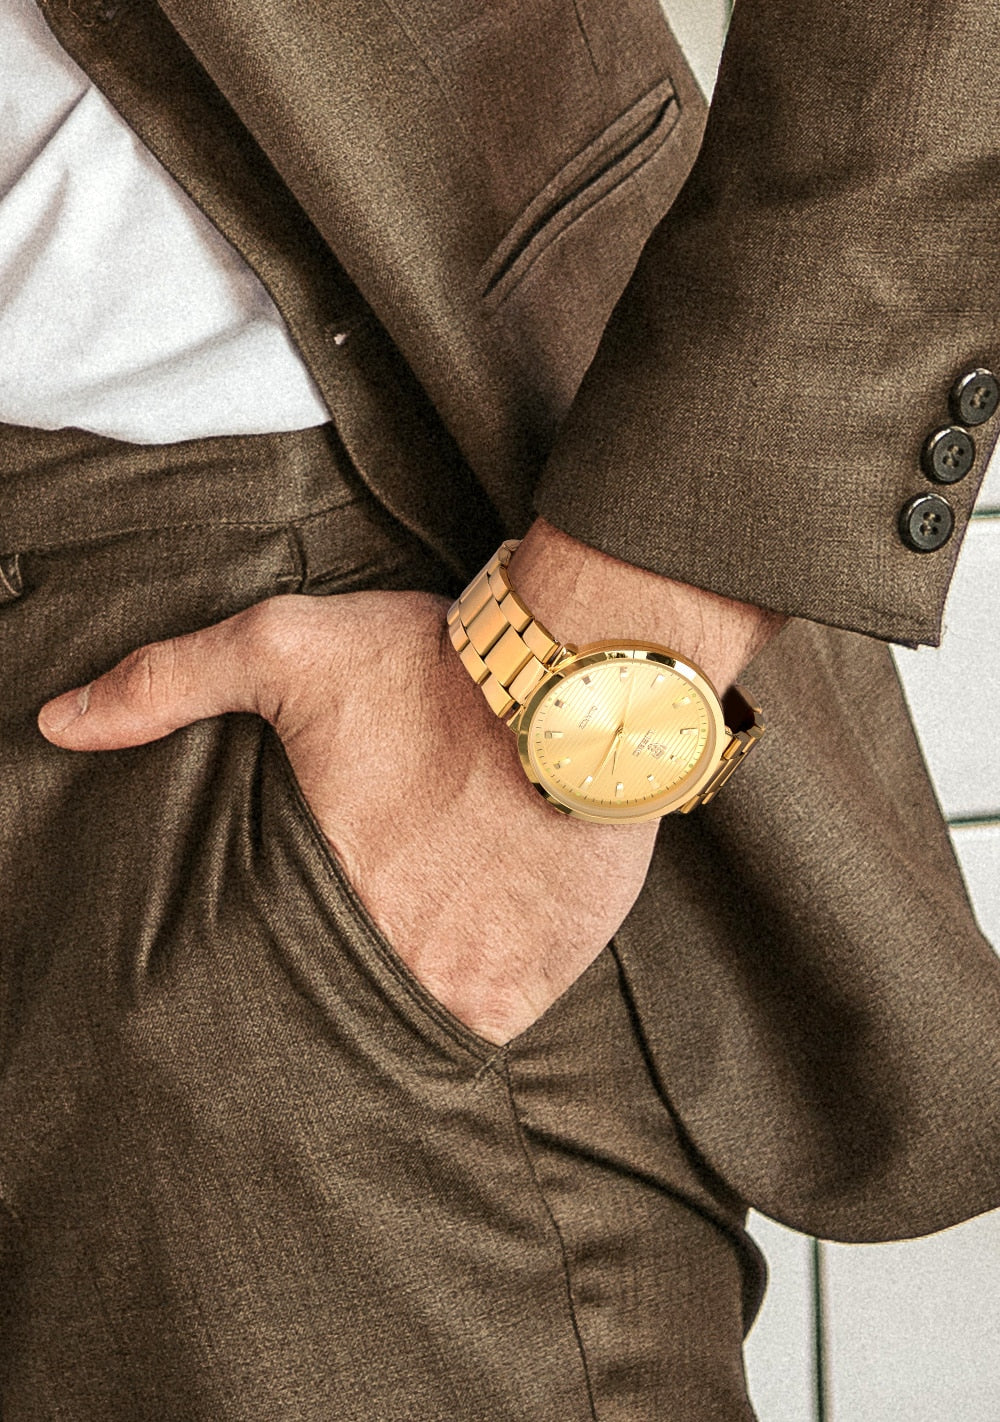 Waterproof Men's Watches Couple Golden Wristwatch